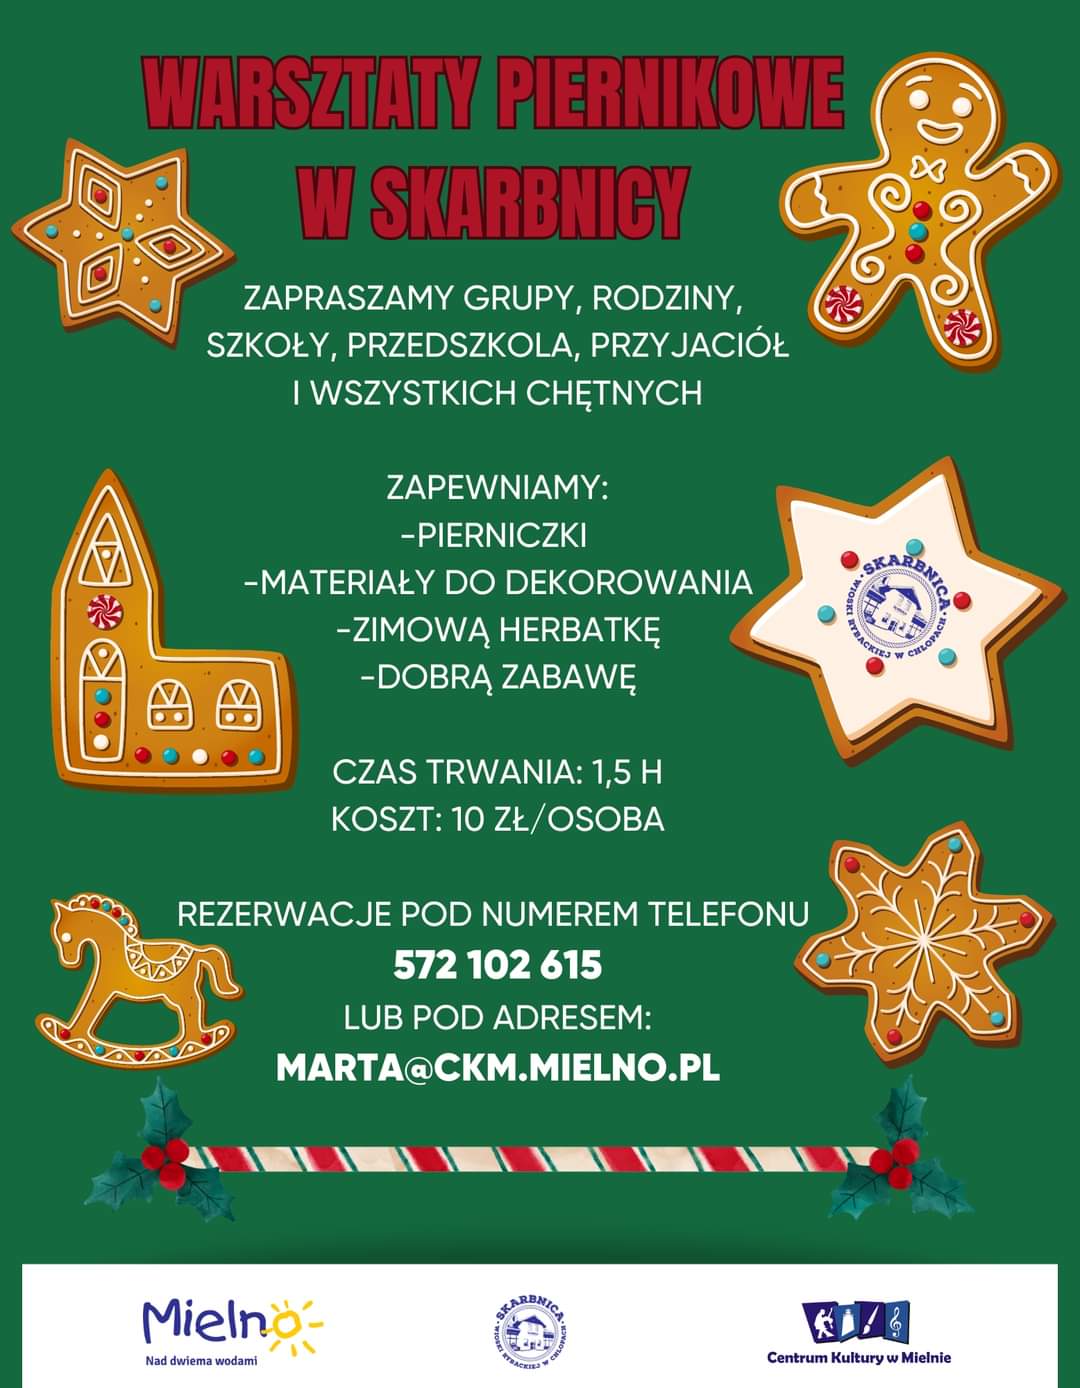 Plakat z zaproszeniem na piernikowe warsztaty w Skarbnicy